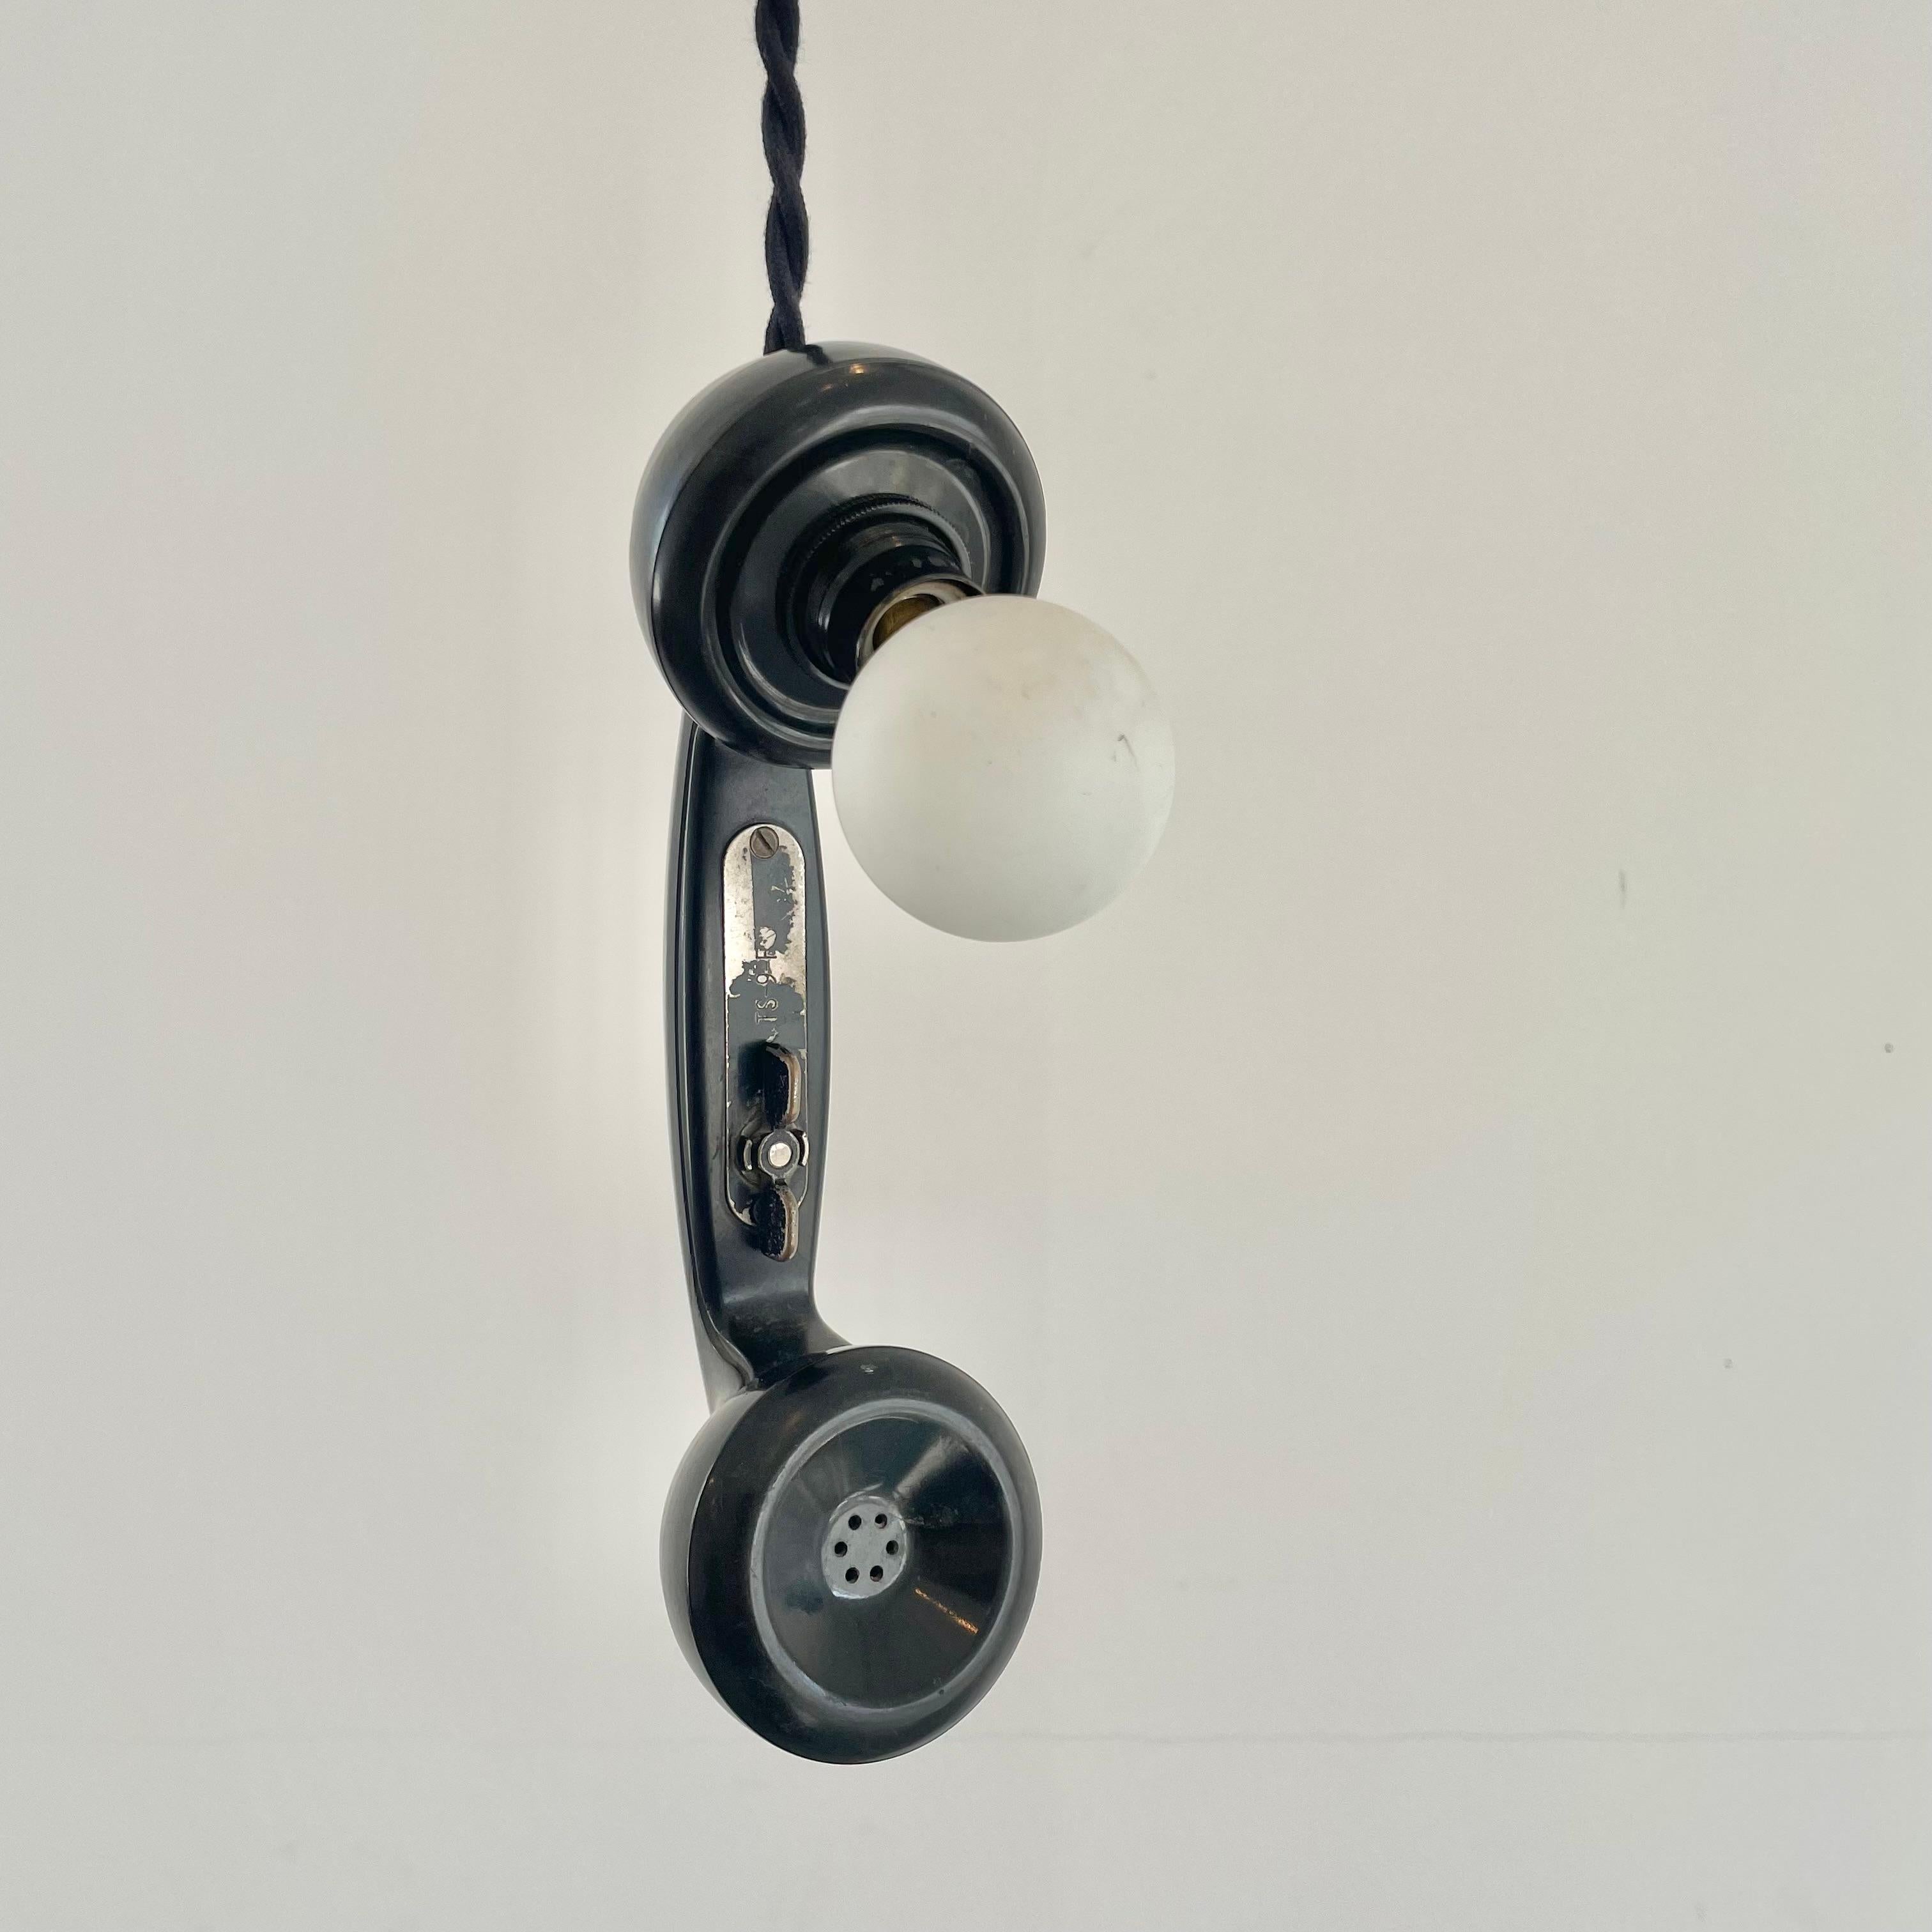 Unglaublich einzigartige Telefonlampe aus einem alten Telefon aus den 60er Jahren.  Die bernsteinfarbene Glühbirne leuchtet wunderschön und vermittelt ein warmes Vintage-Gefühl. Kann an einer Stange aufgehängt werden oder aufgerollt auf einem Tisch